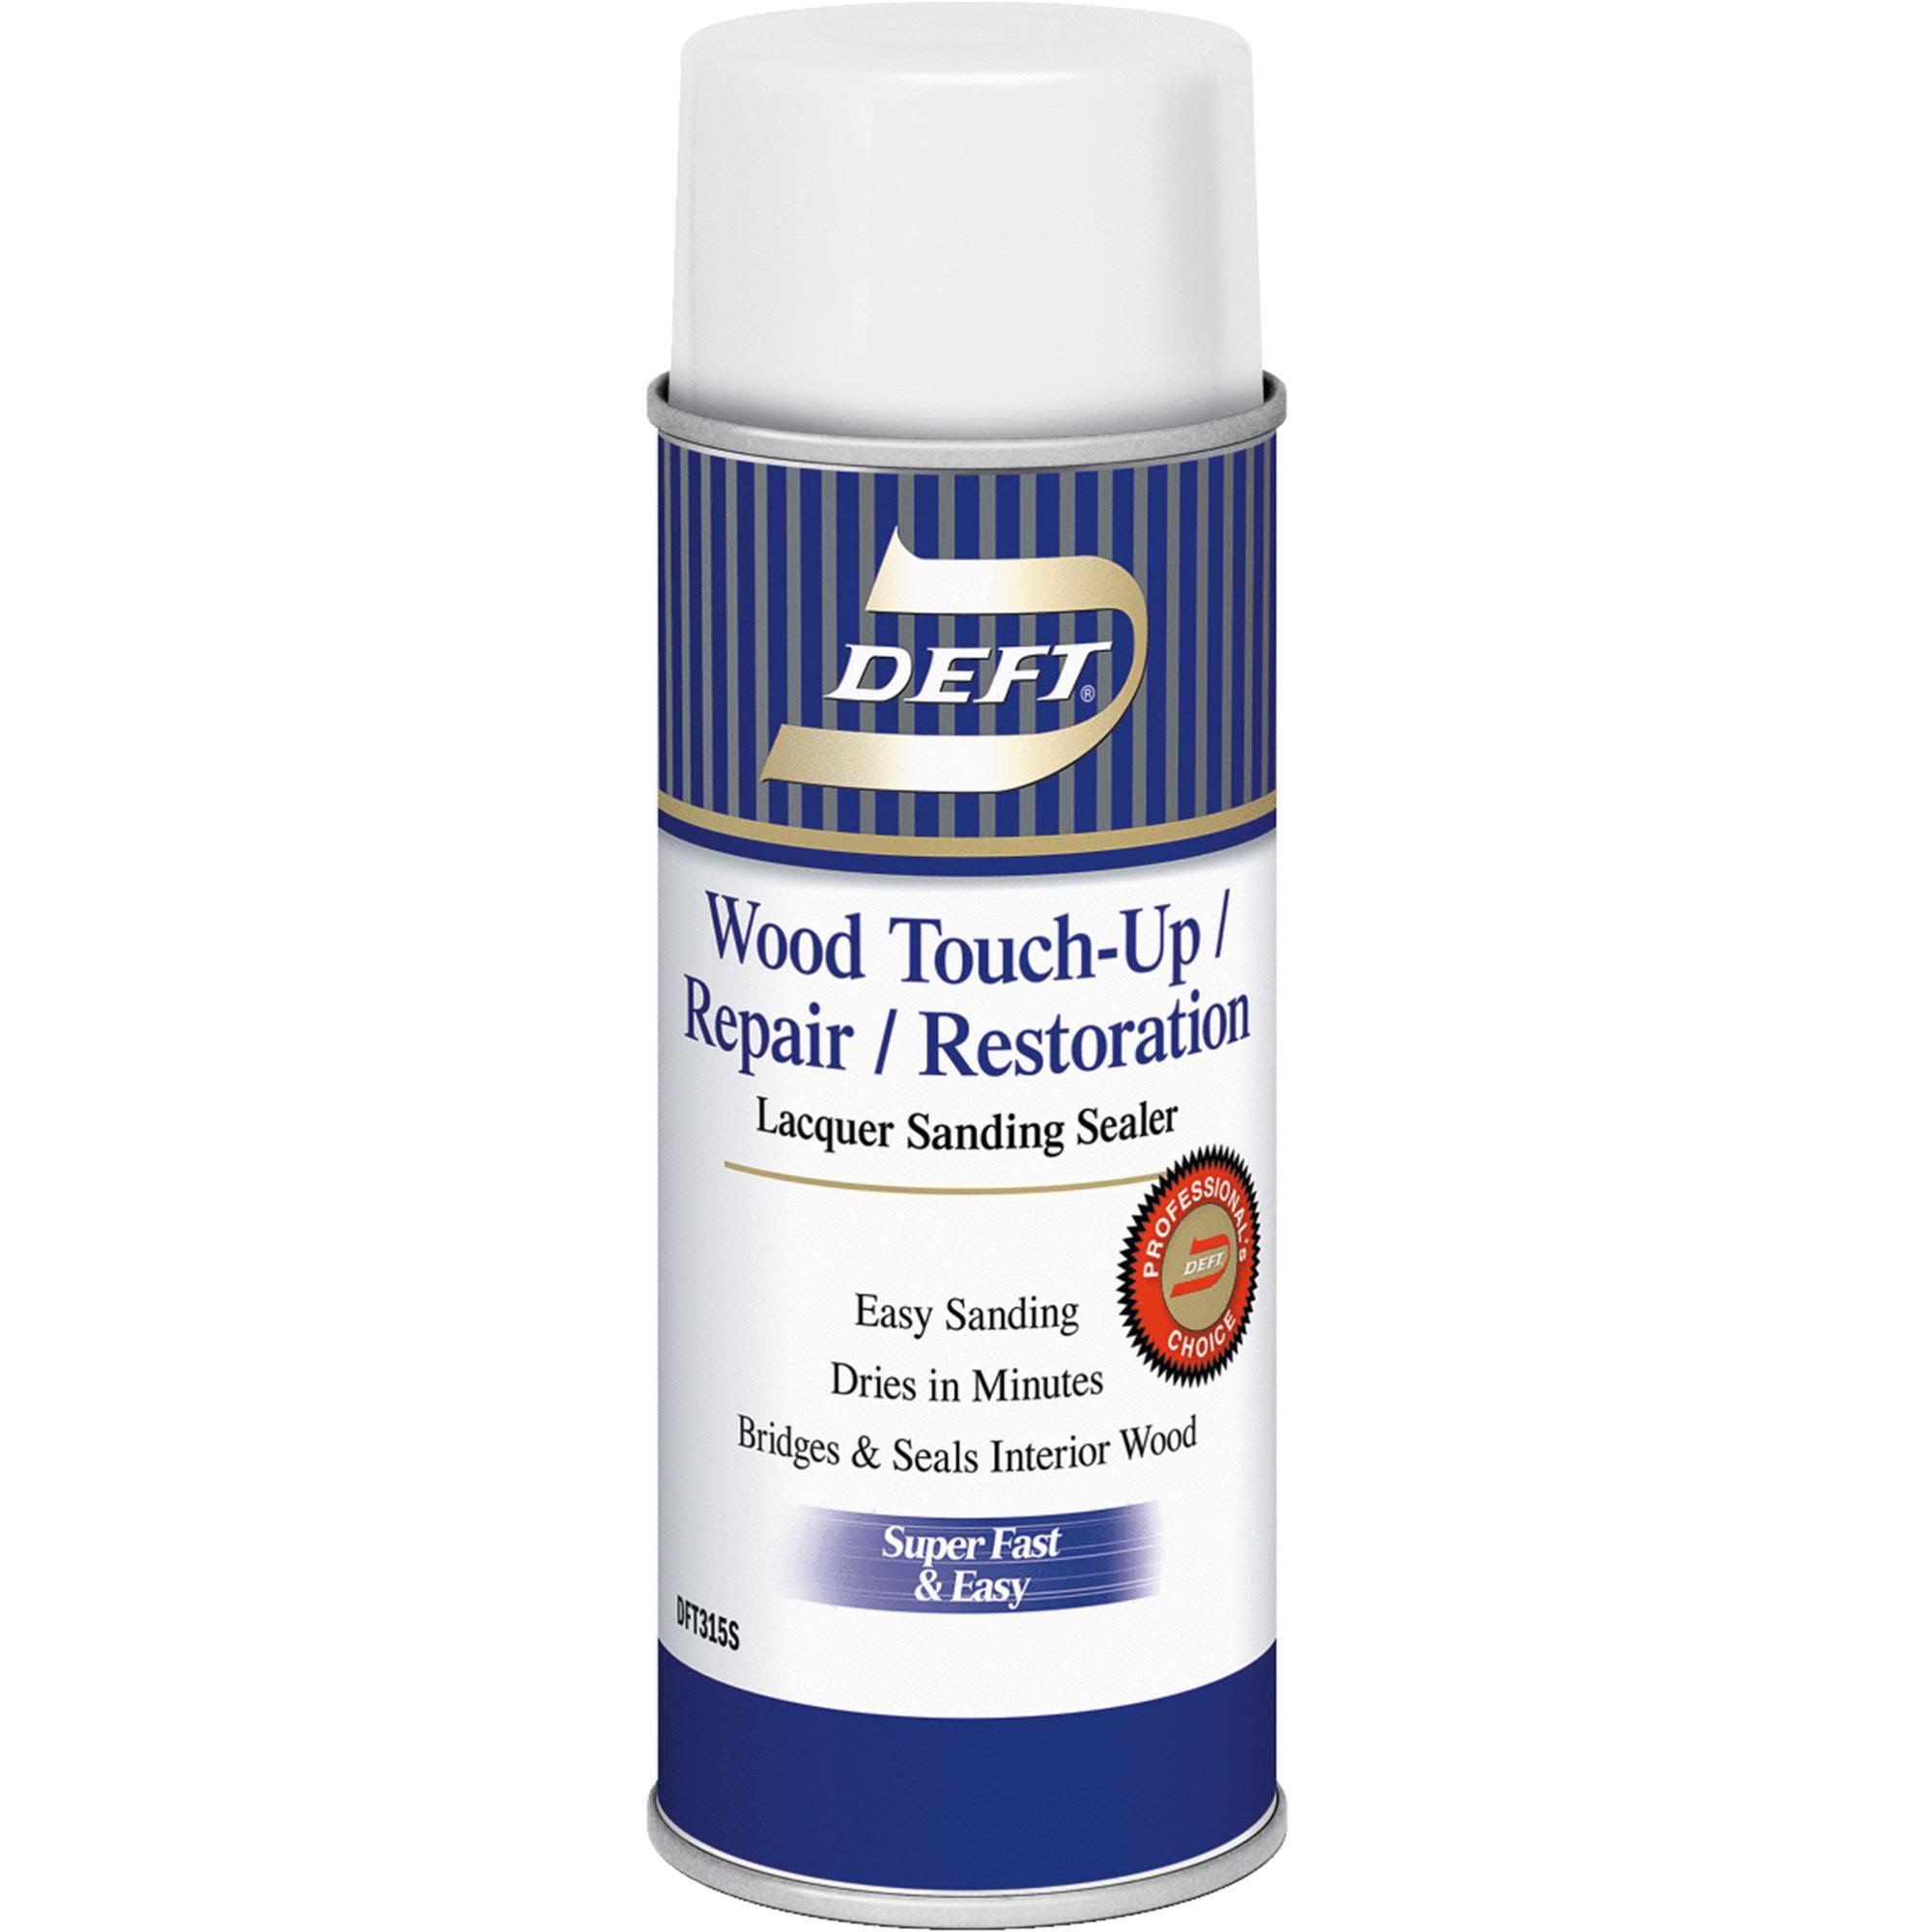 Deft VOC Compliant Lacquer Sanding Sealer Spray, 12 oz.